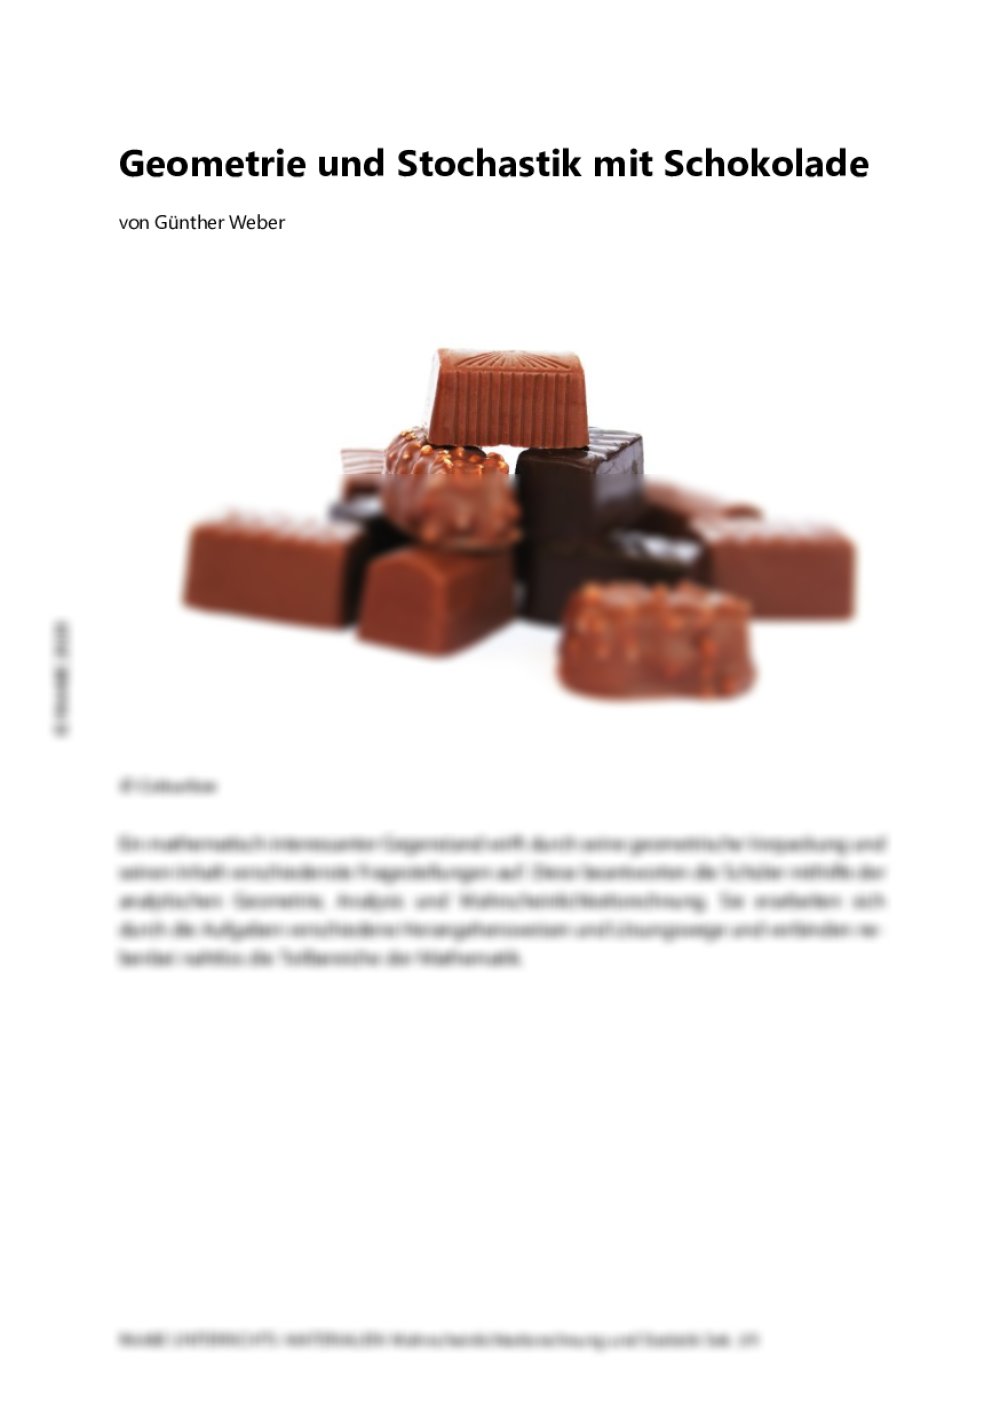 Geometrie und Stochastik mit Schokolade - Seite 1